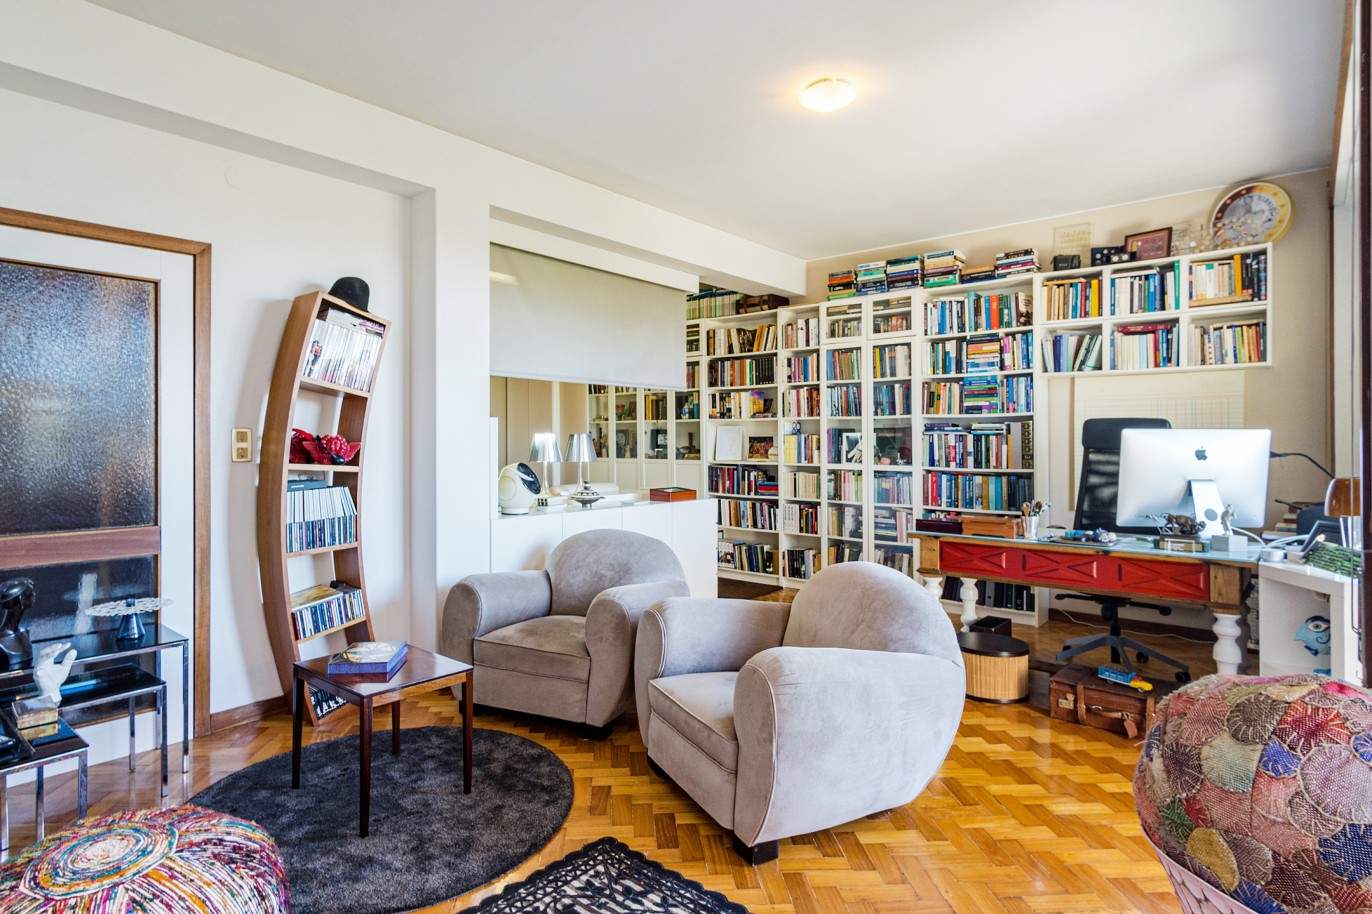 Verkauf: Wohnung mit Balkon, in der Nähe der Universität Pole von Asprela, Porto, Portugal_212183